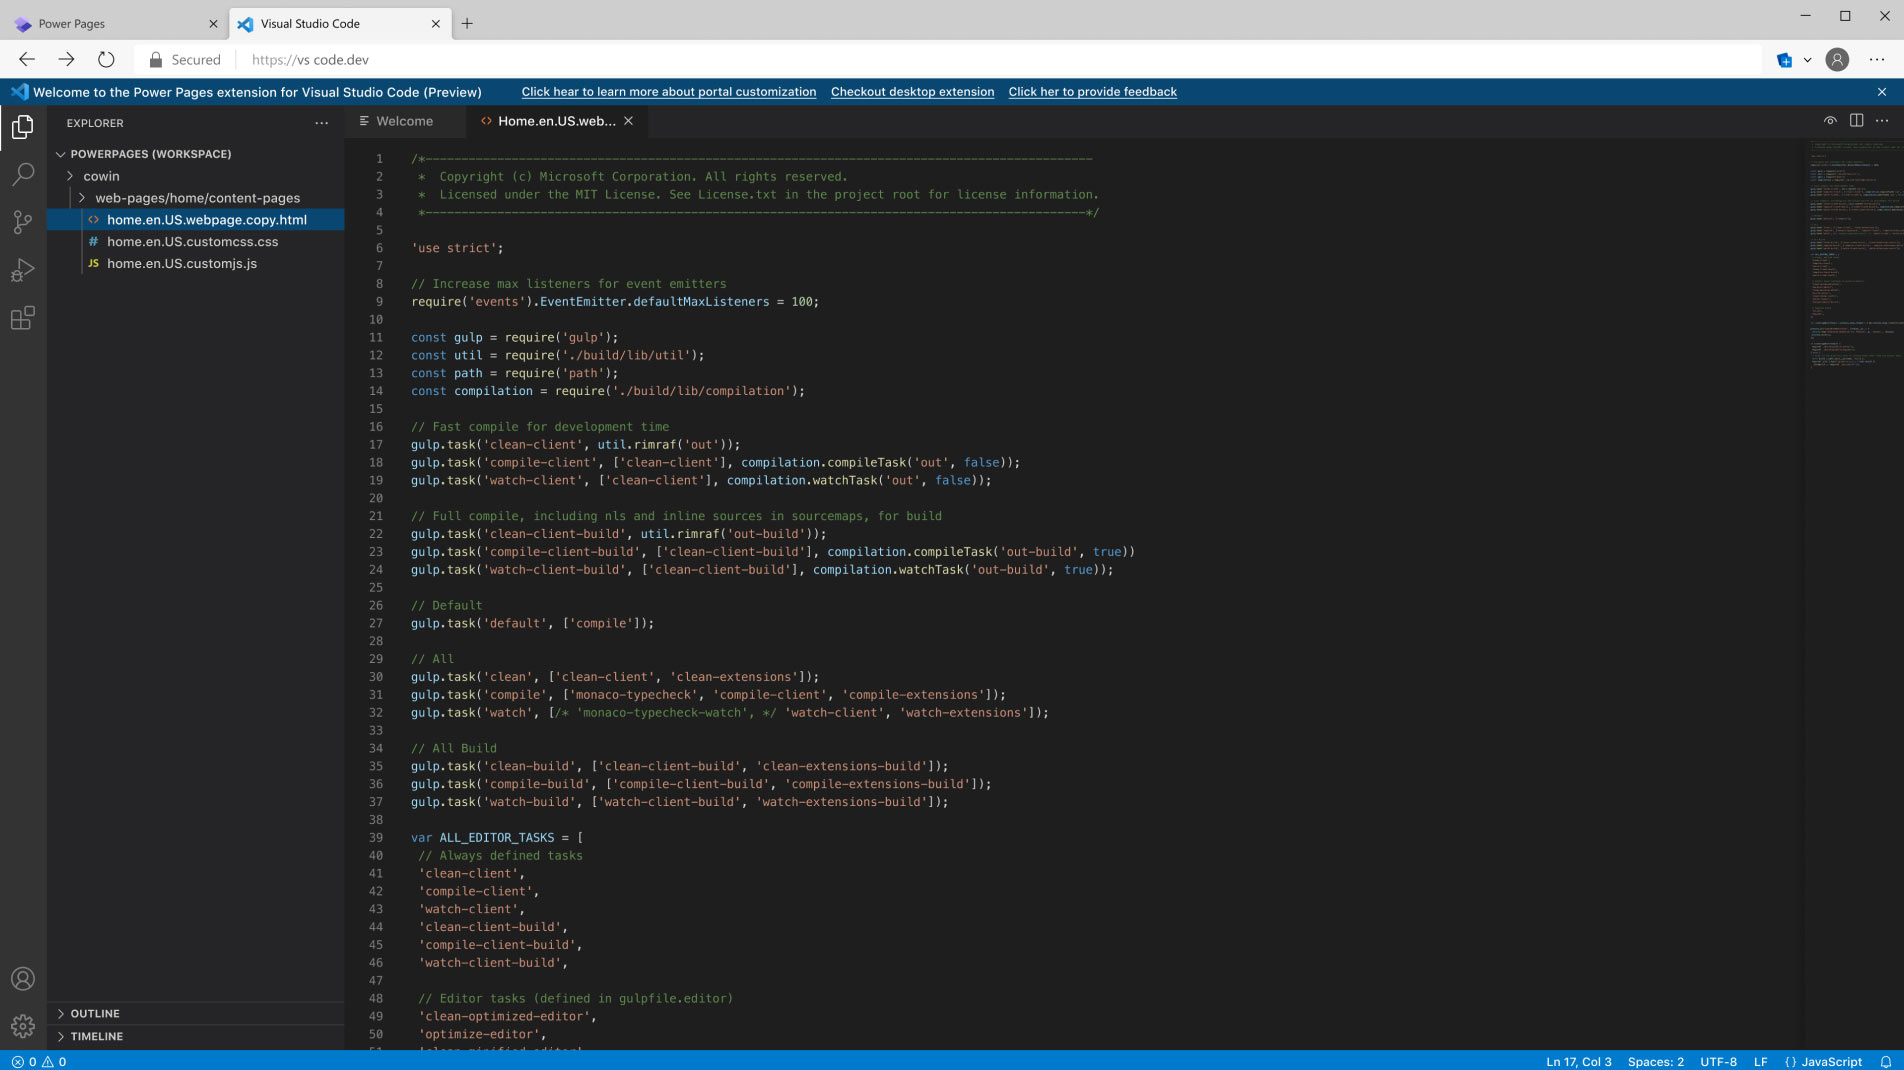 扩展至 Visual Studio Code 的 Power Pages 应用